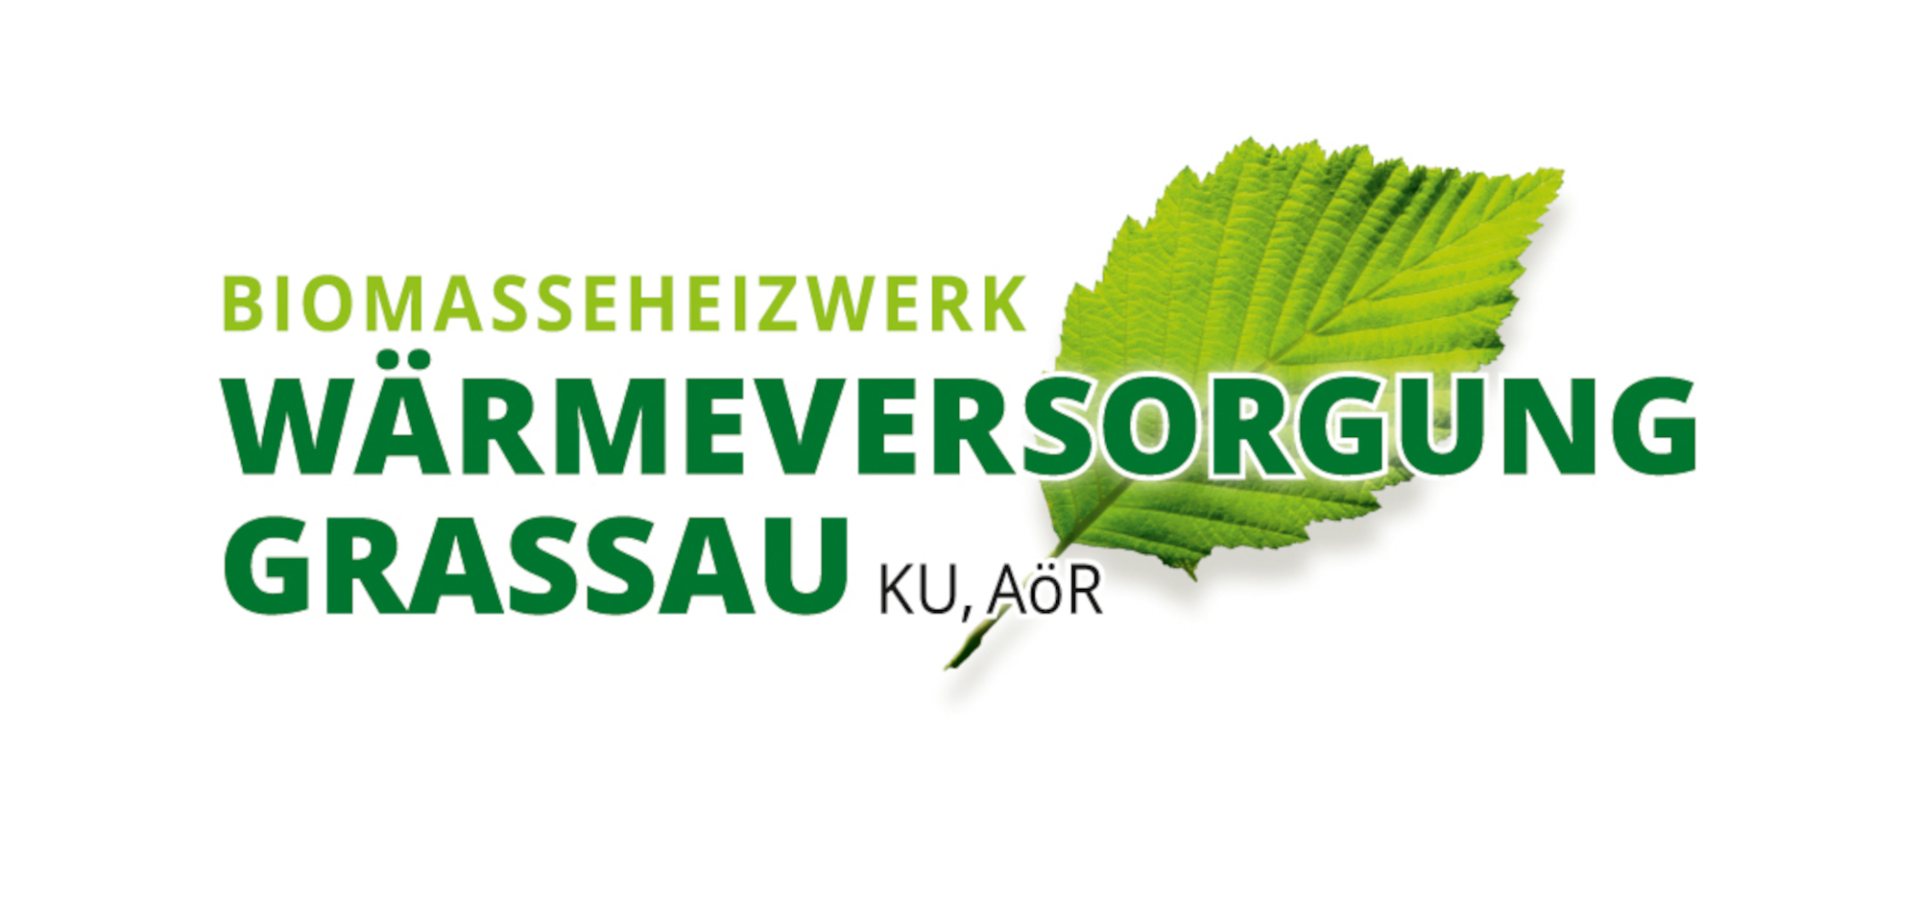 Wärmeversorgung Grassau Logo, © Wärmeversorgung Grassau KU AöR